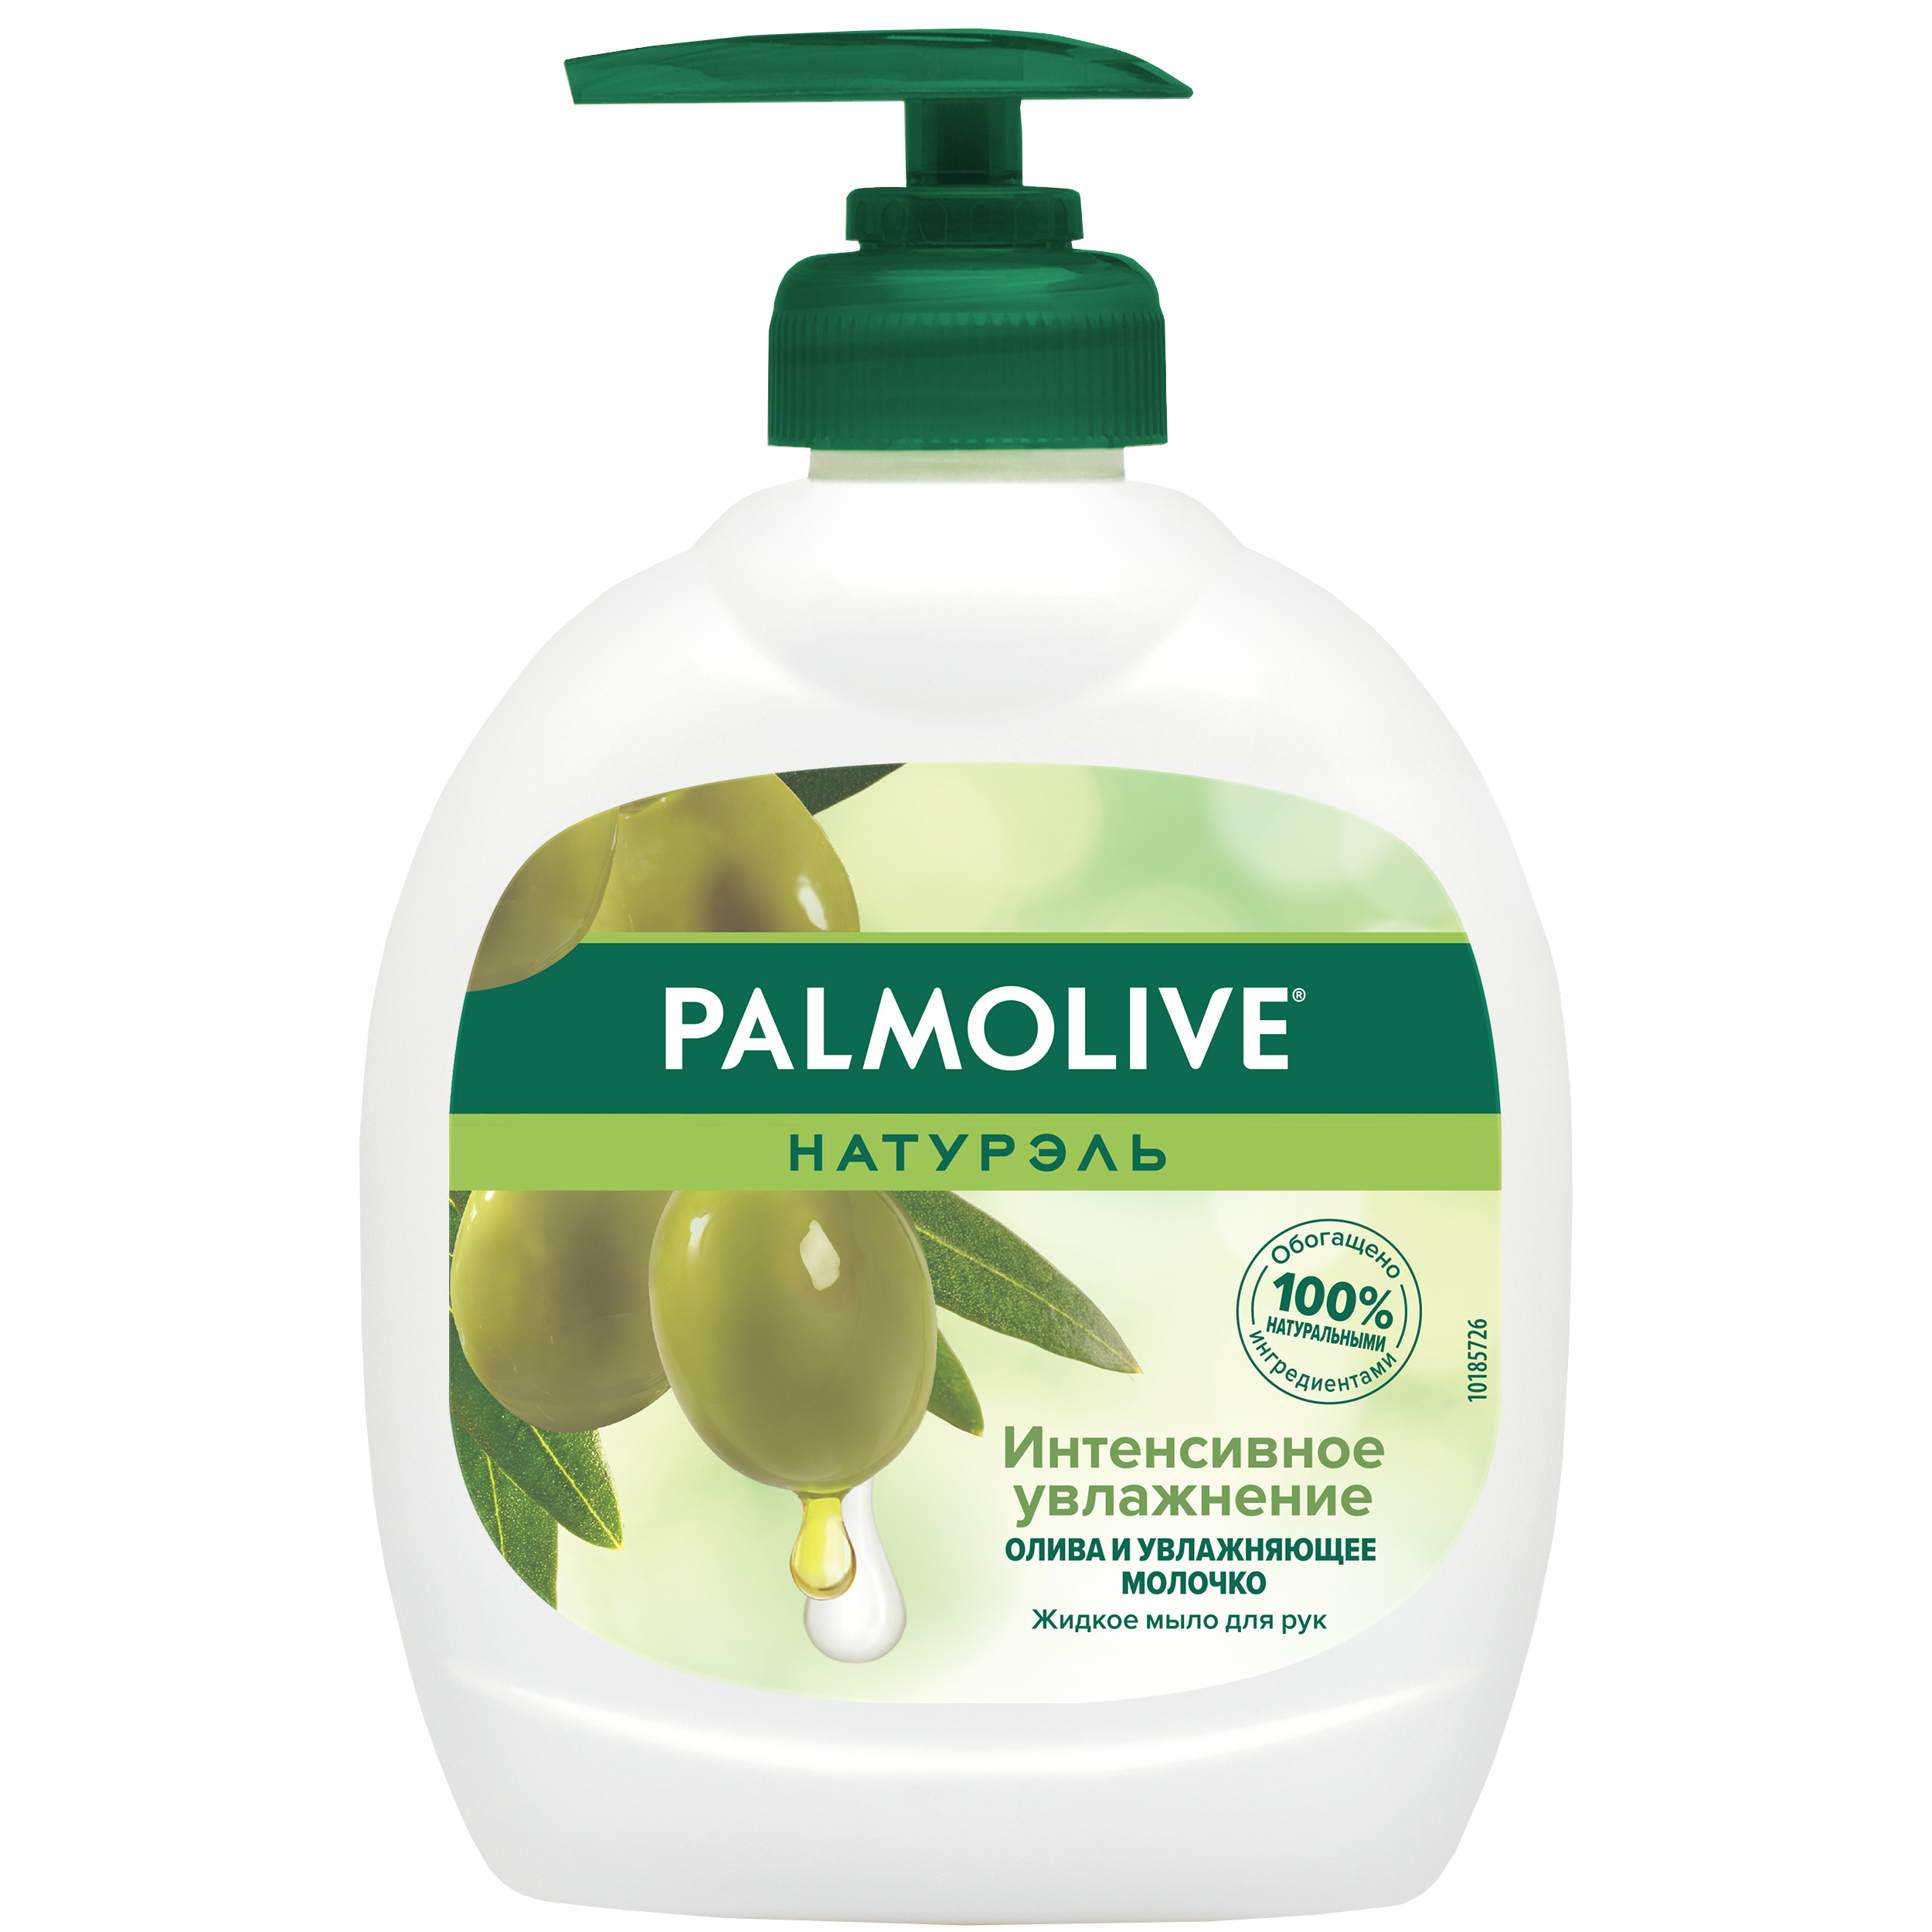 Мыло жидкое для рук Palmolive Интенсивное Увлажнение с увлажняющим молочком 300 мл palmolive жидкое мыло оливковое молочко 300